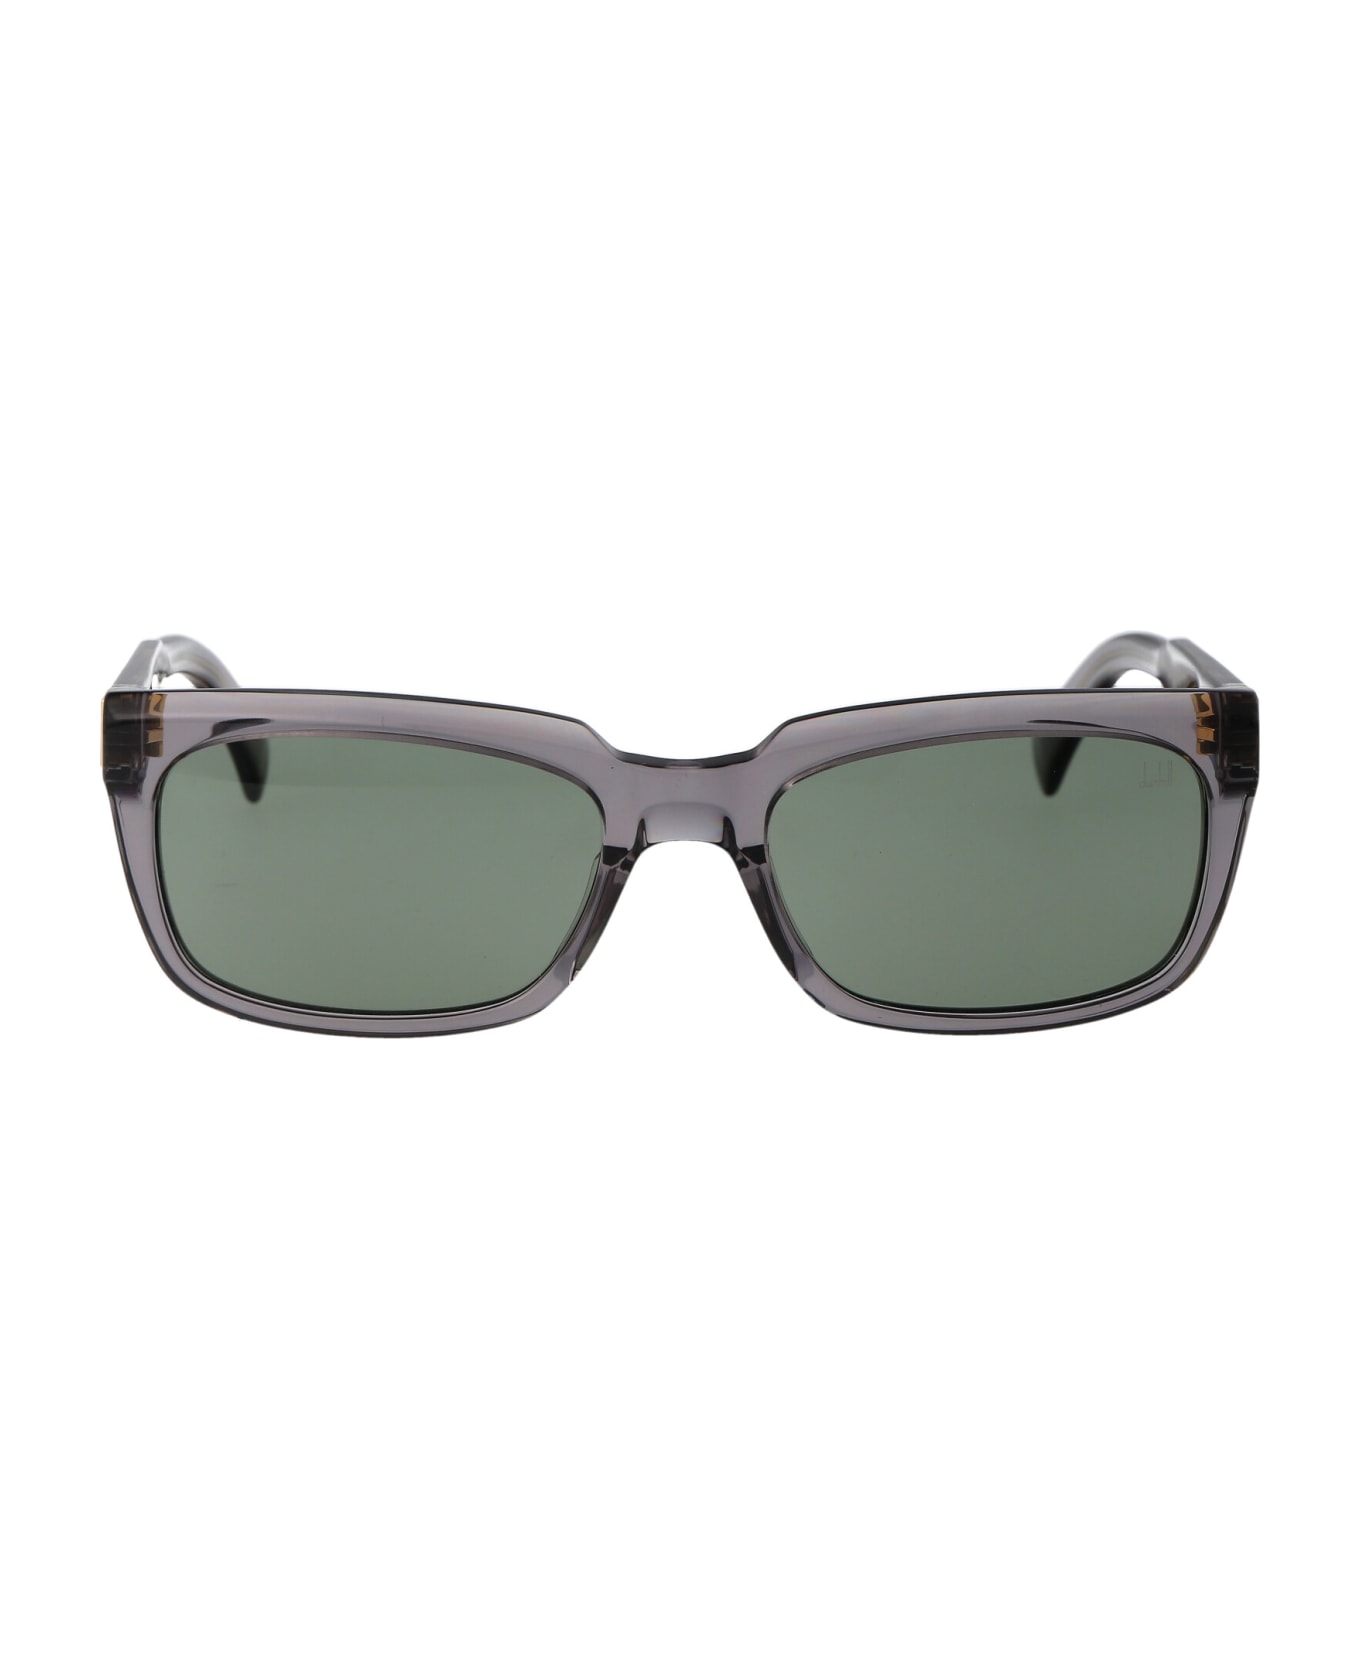 Dunhill Du0056s Sunglasses - 003 GREY GREY GREEN サングラス